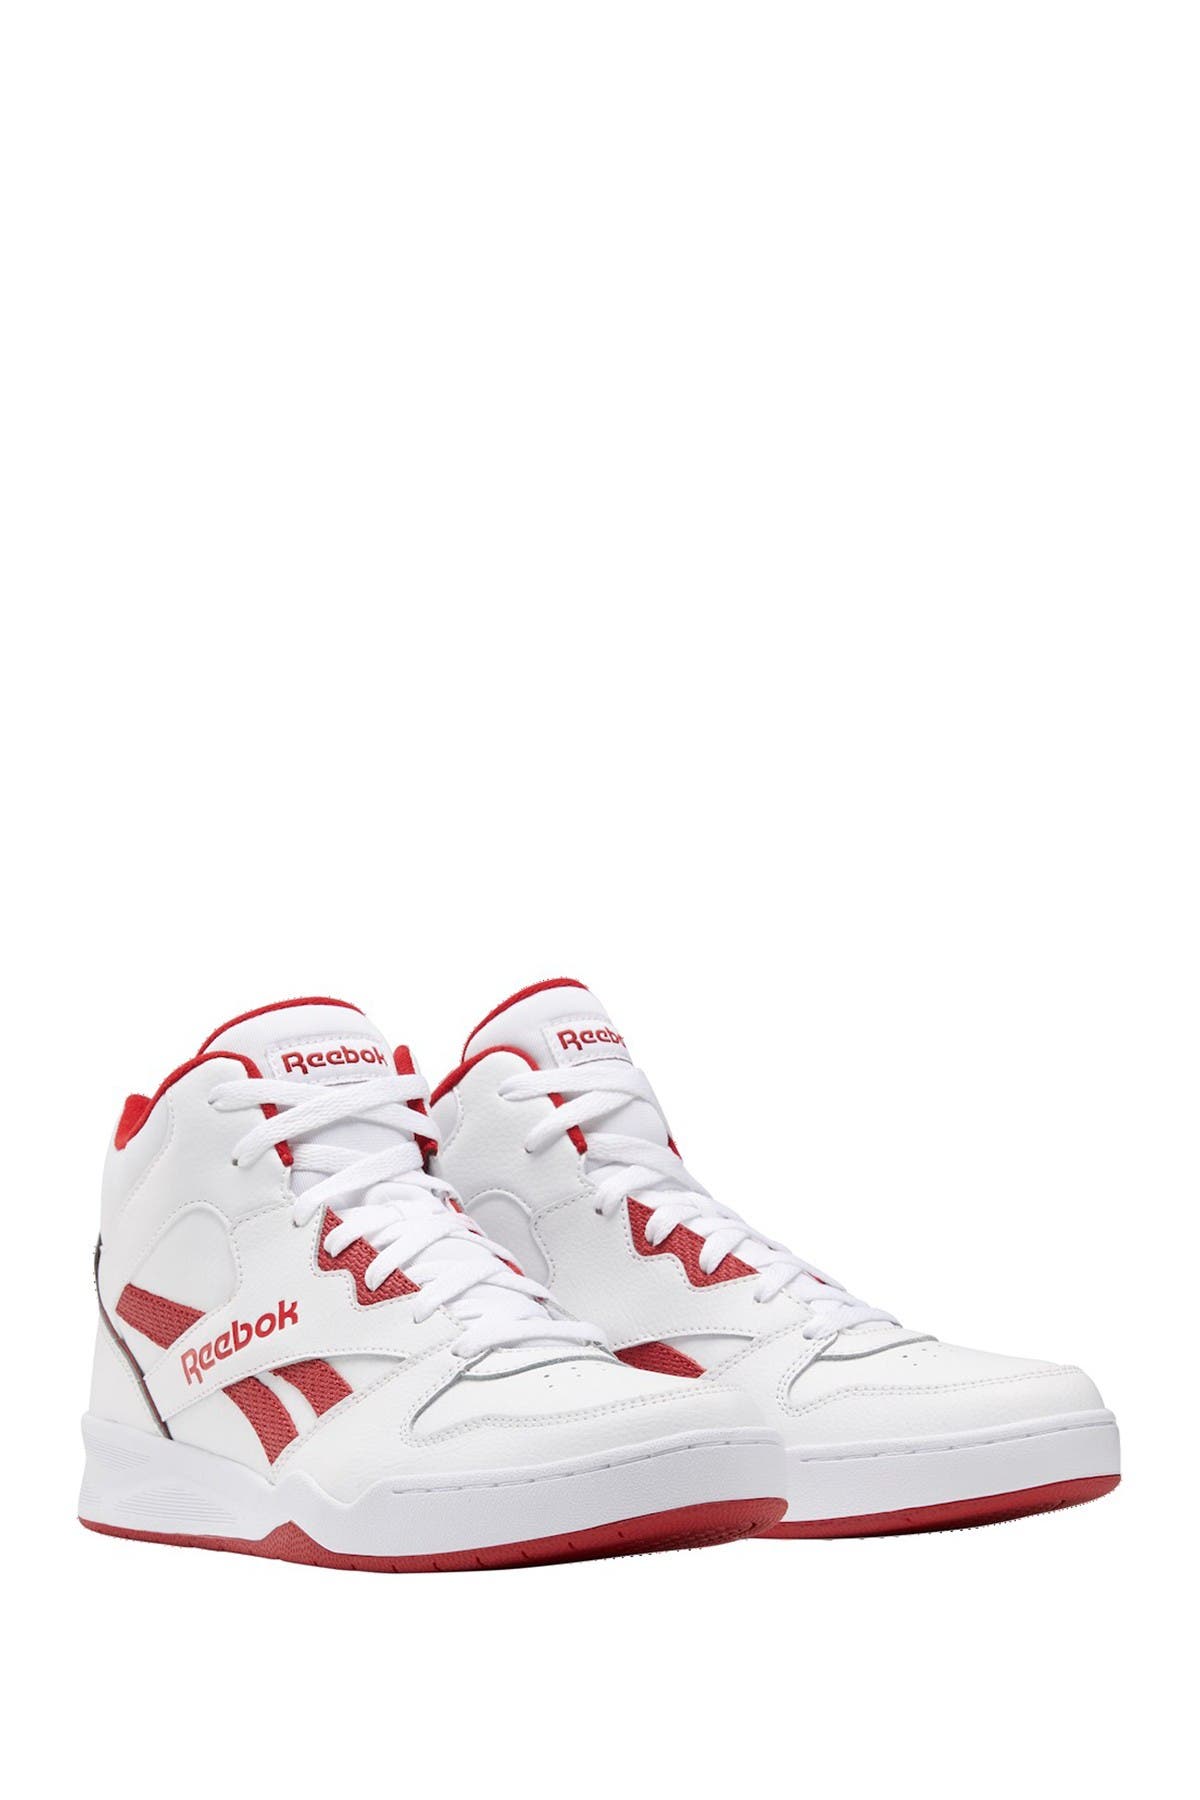 Reebok Royal Bb4500 Hi2 Mid Sneaker In White/flar | ModeSens